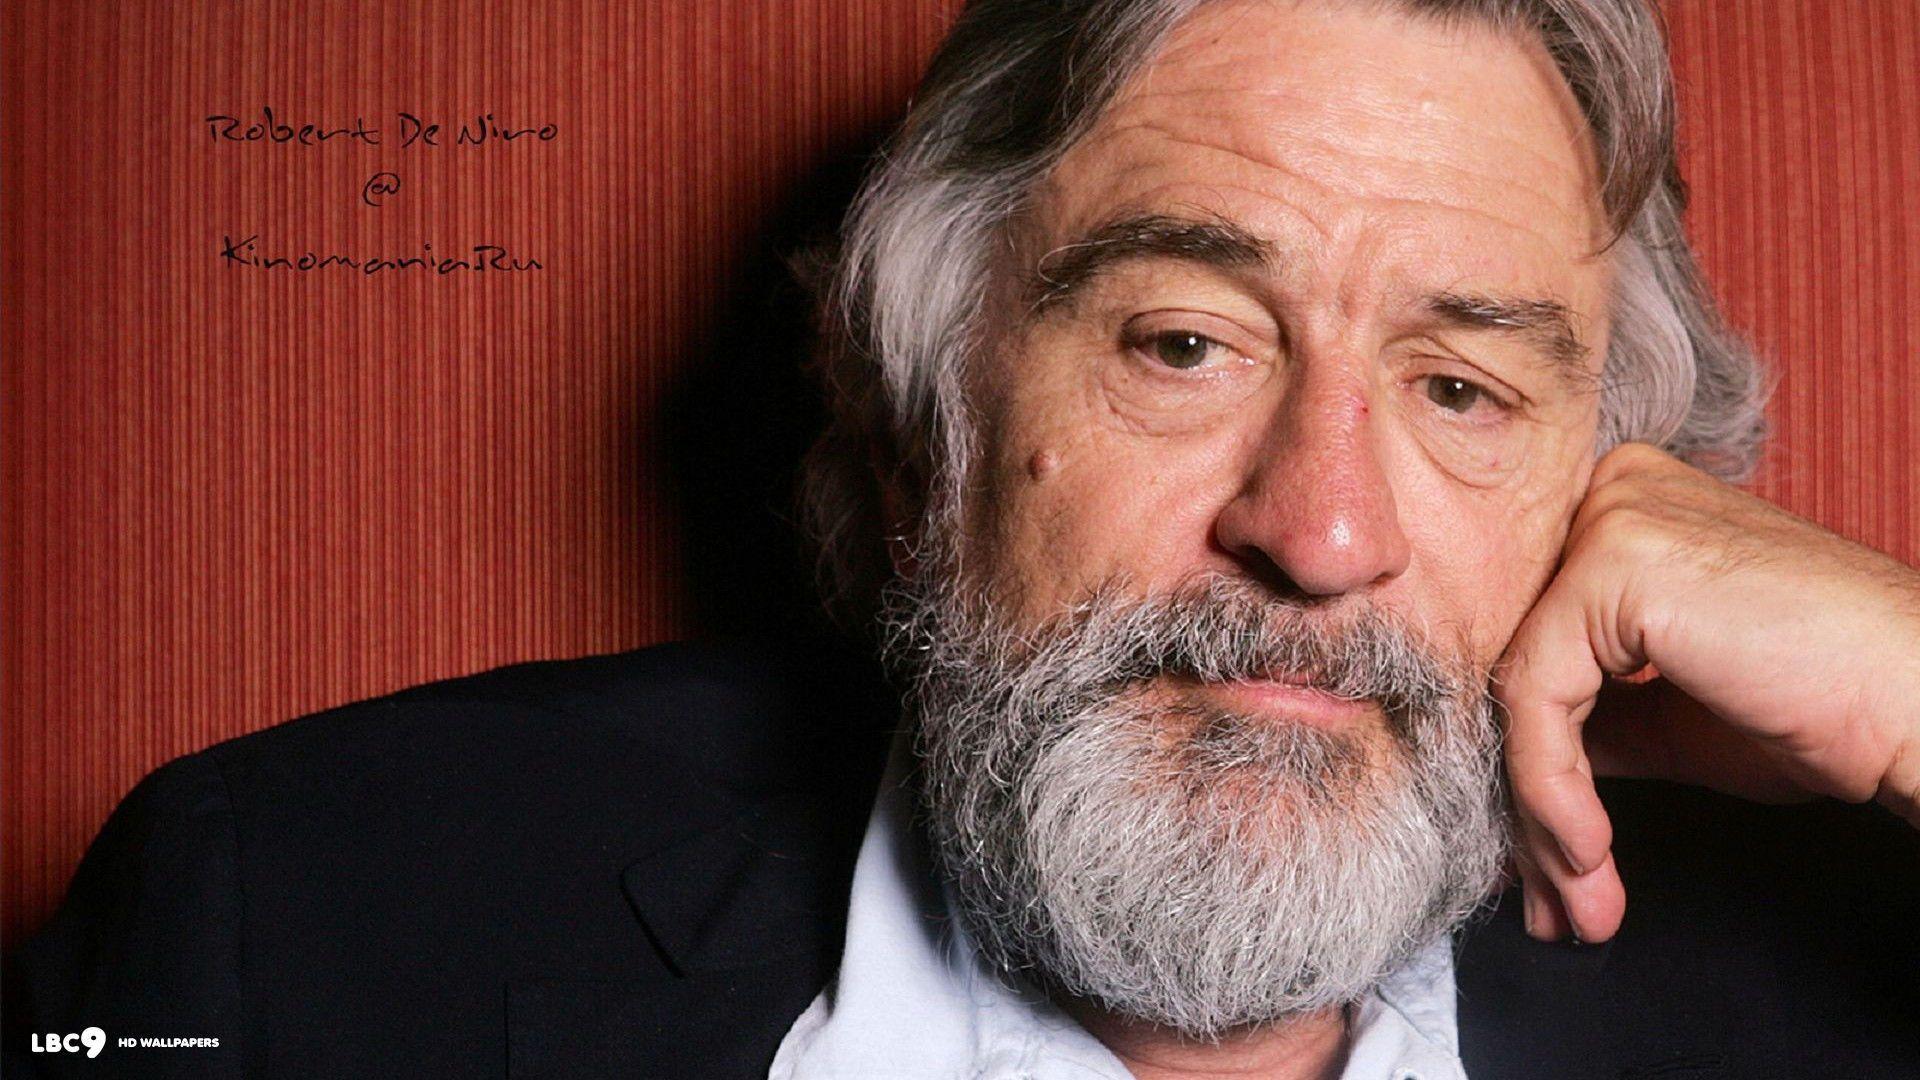 Robert De Niro Wallpaper 4 8. Actors HD Background